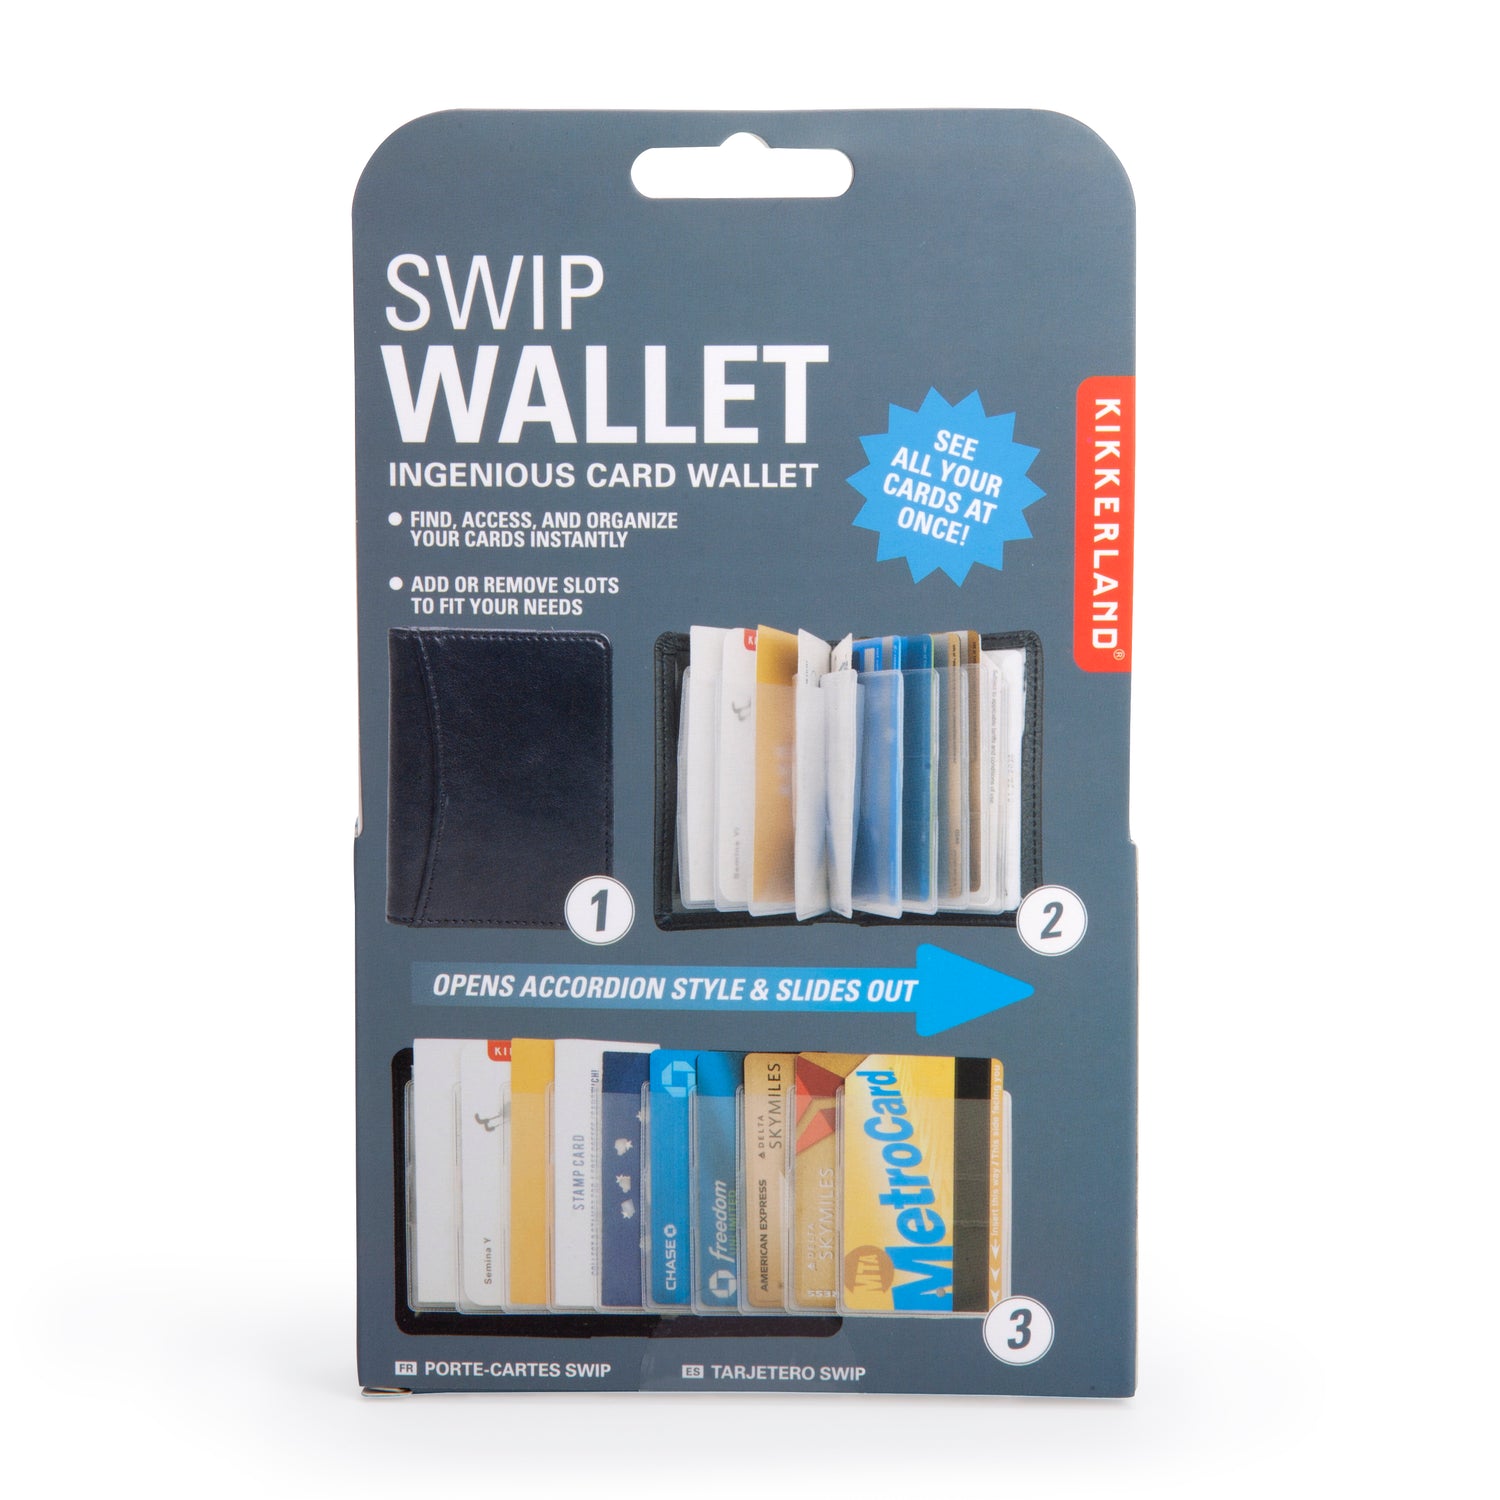 SWIP Wallet